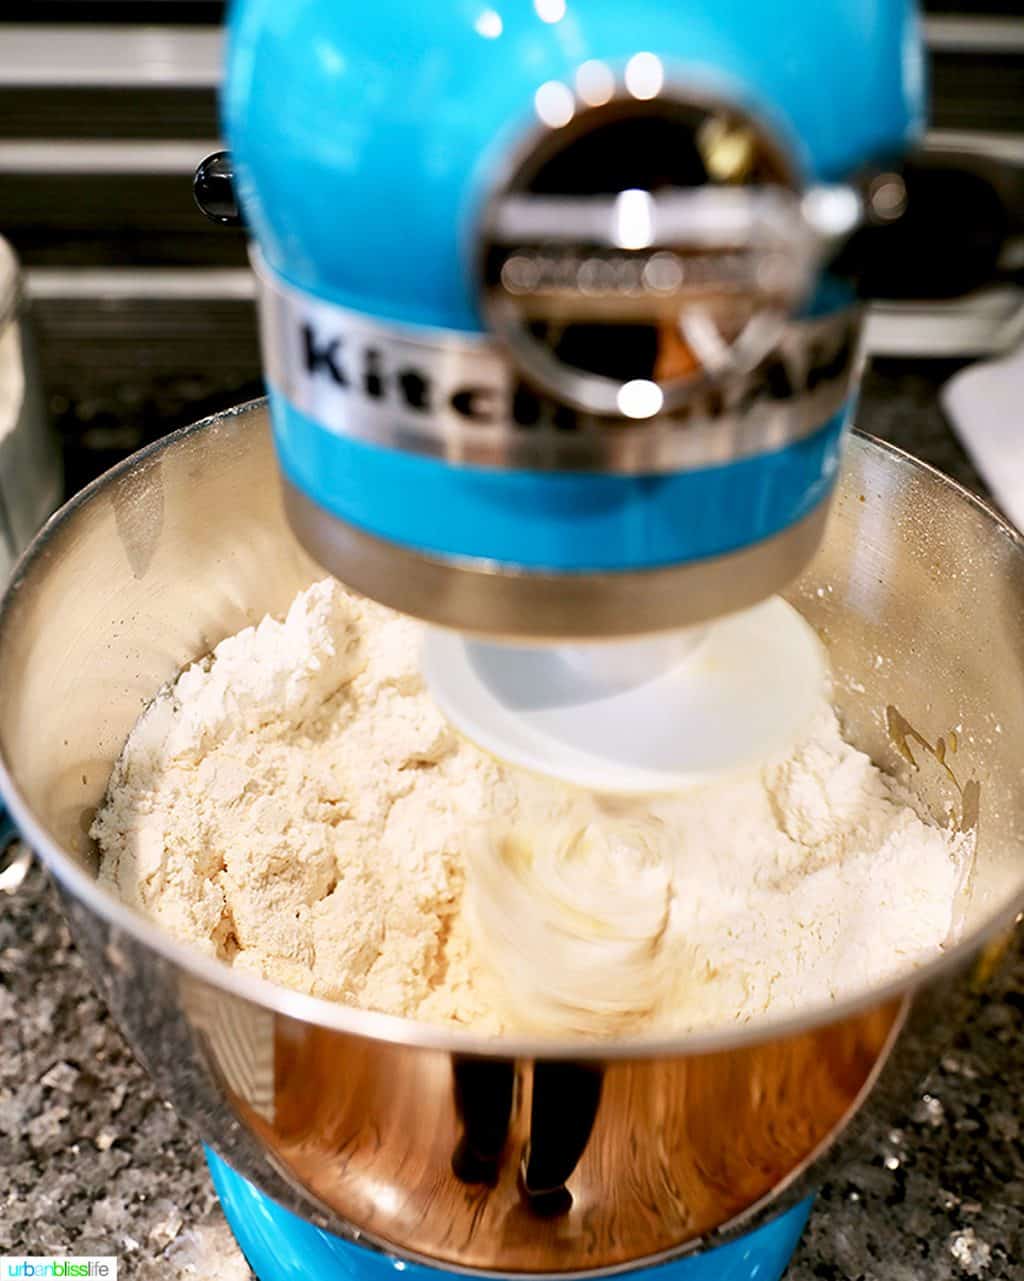 dough in aqua Kitchenaid stand mixer